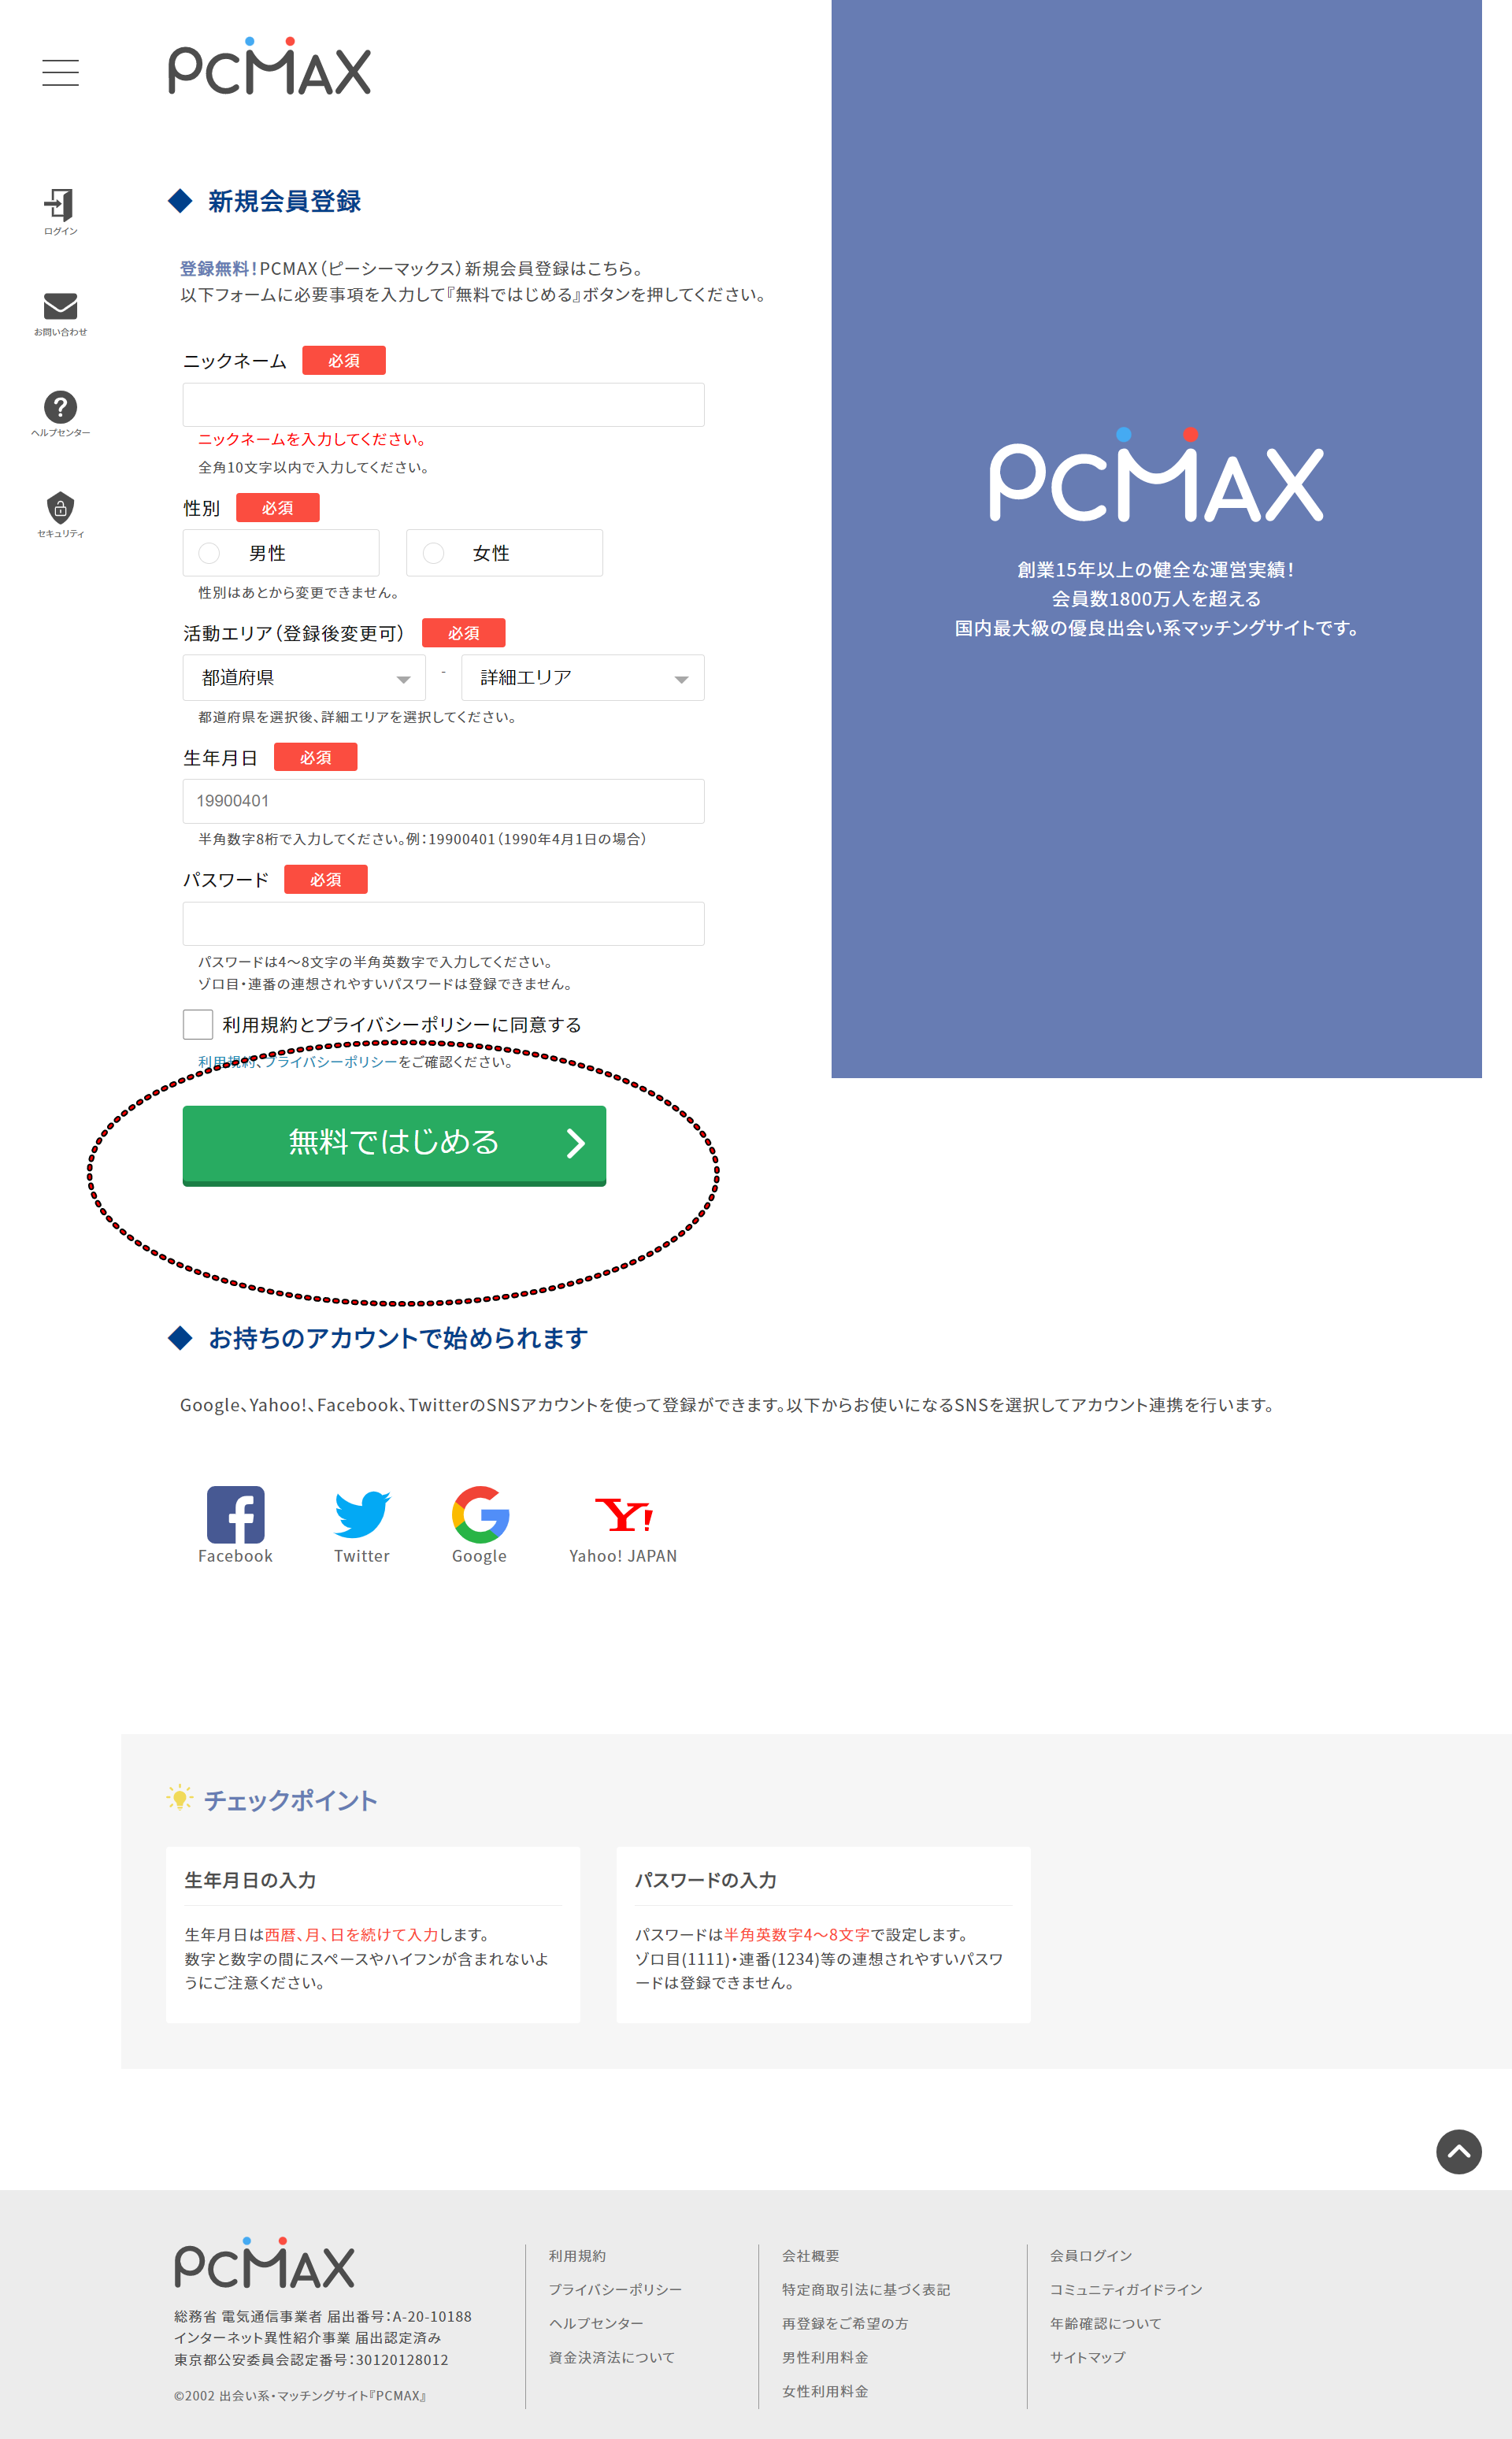 PCMAXはアダルトでの出会いで最も即効性の高い出会い系アプリ（サイト）。実際にPCMAXに登録して徹底攻略。使い方や評価、口コミや体験談を紹介